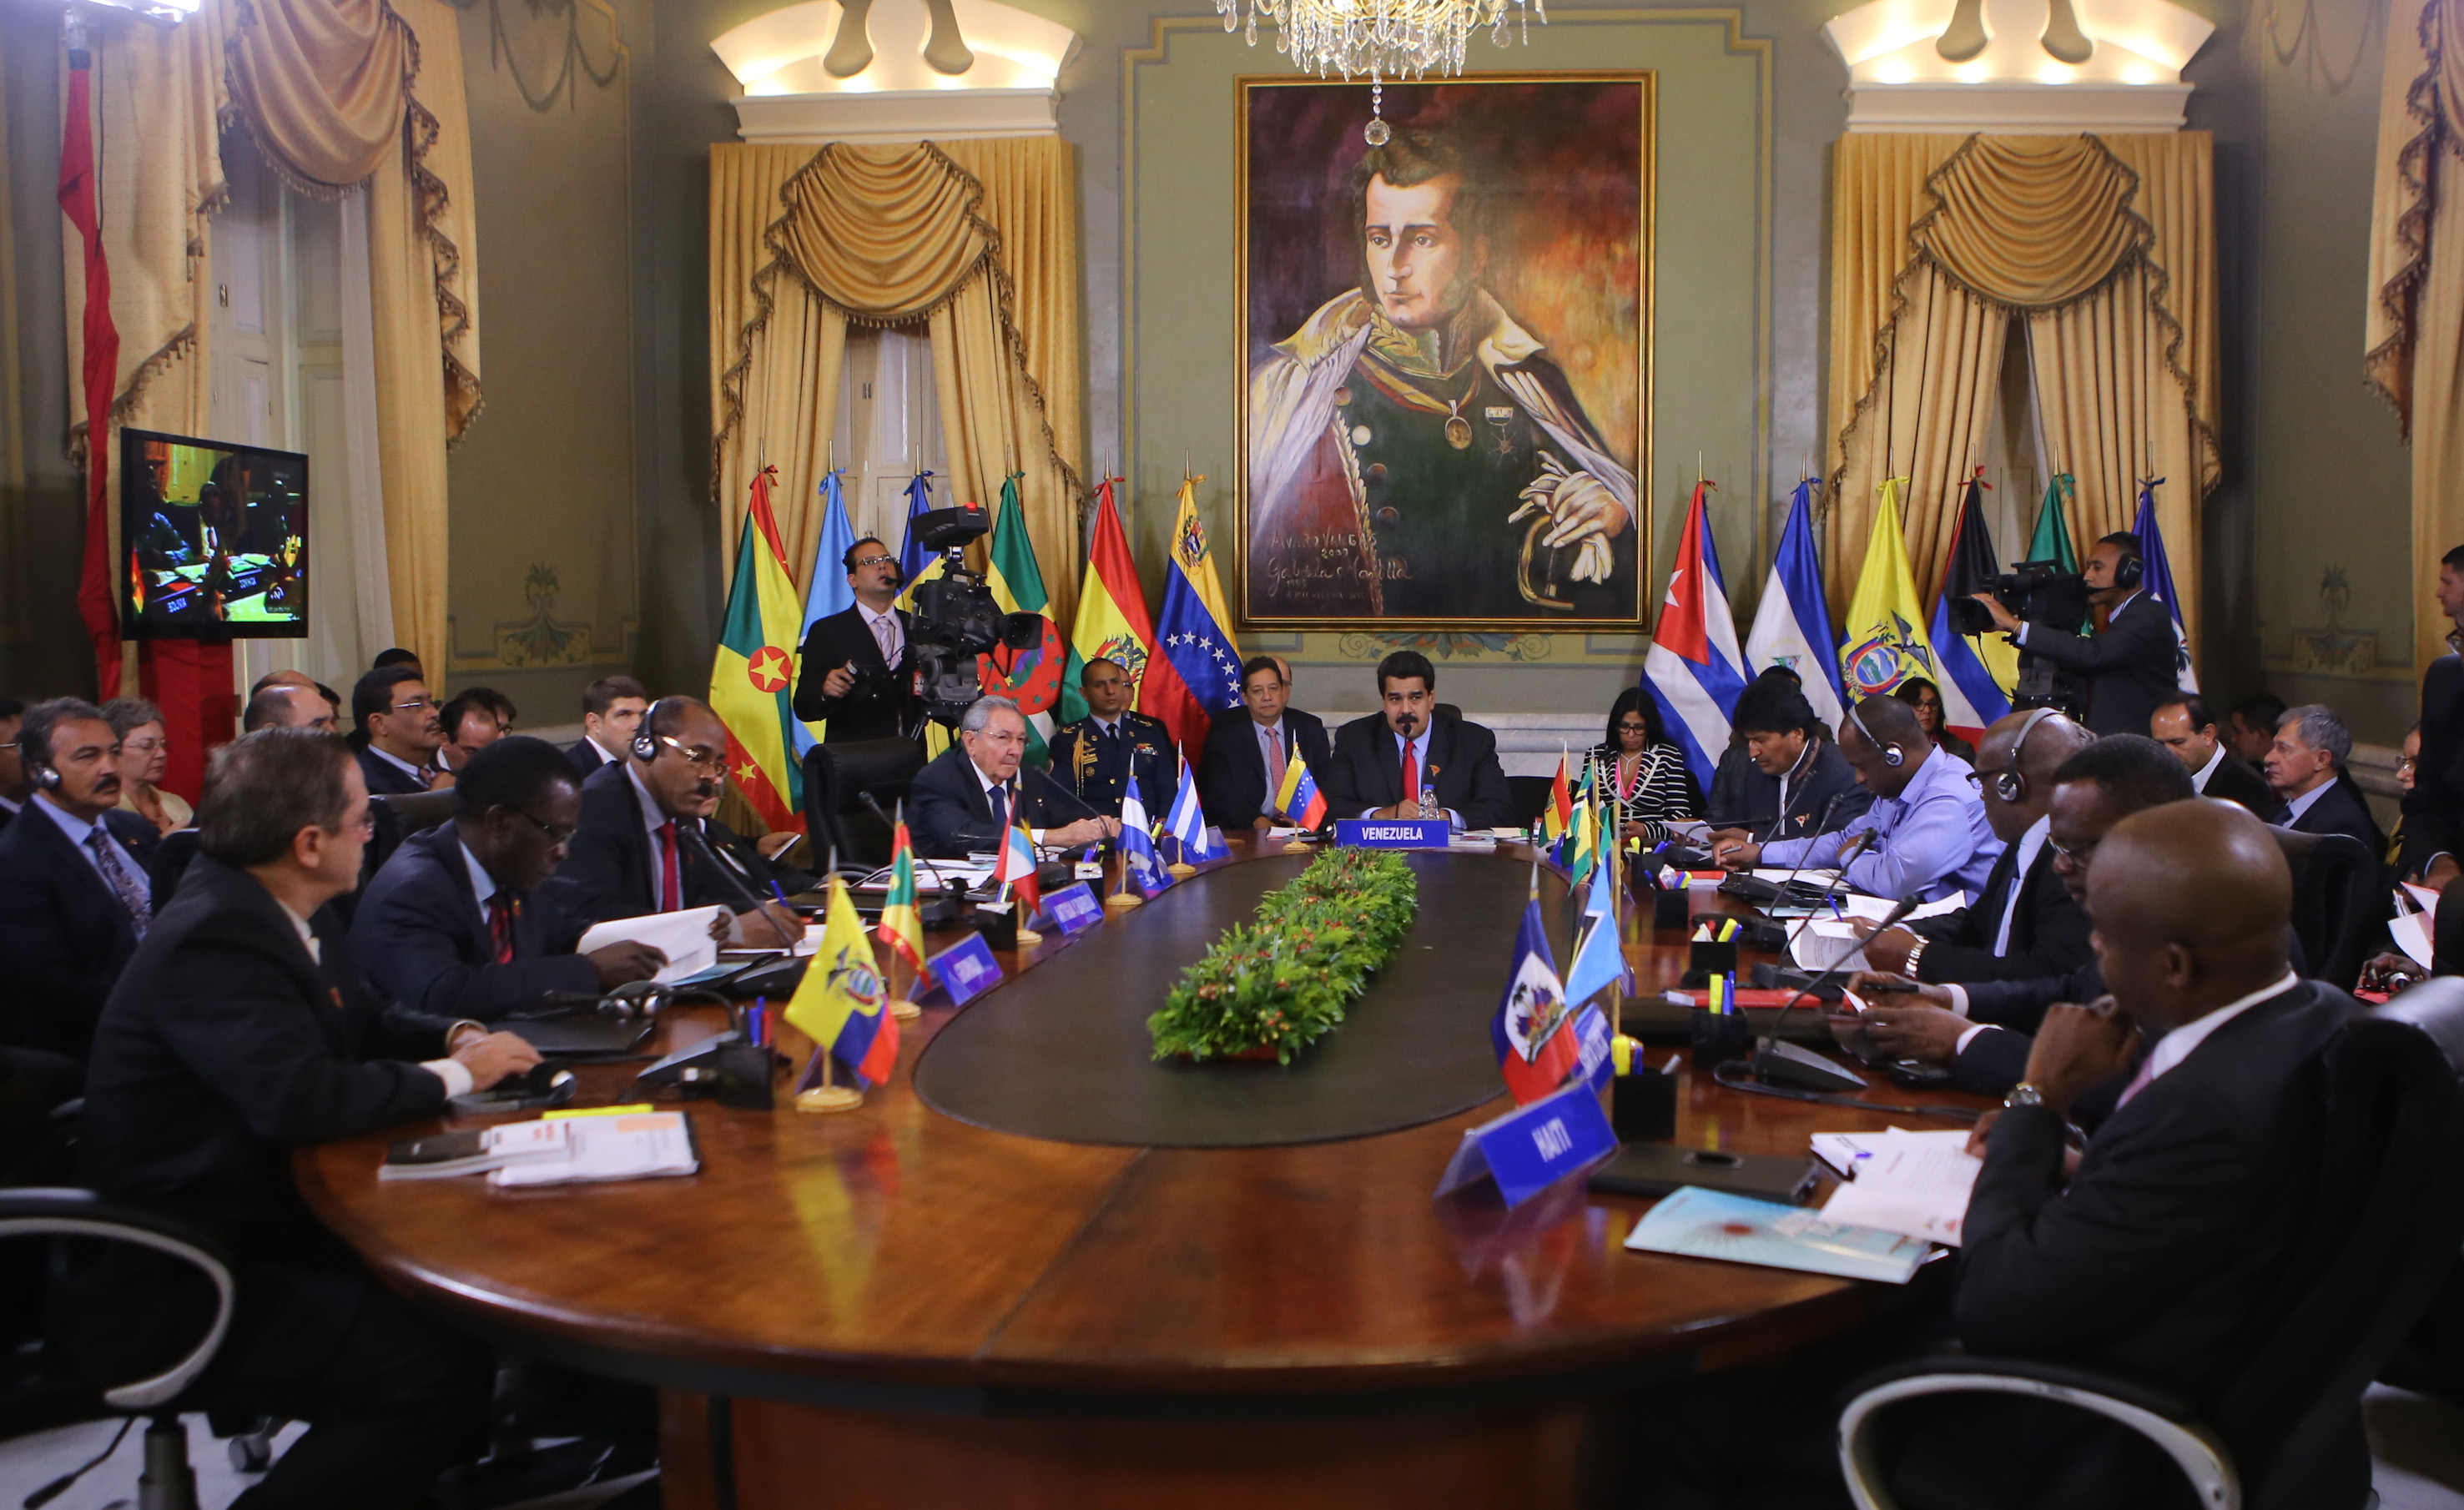 La Alianza Bolivariana para los Pueblos de Nuestra América (ALBA) ratificó su compromiso con la paz en la región frente a recientes injerencias de Estados Unidos contra Venezuela, uno de sus países miembros.